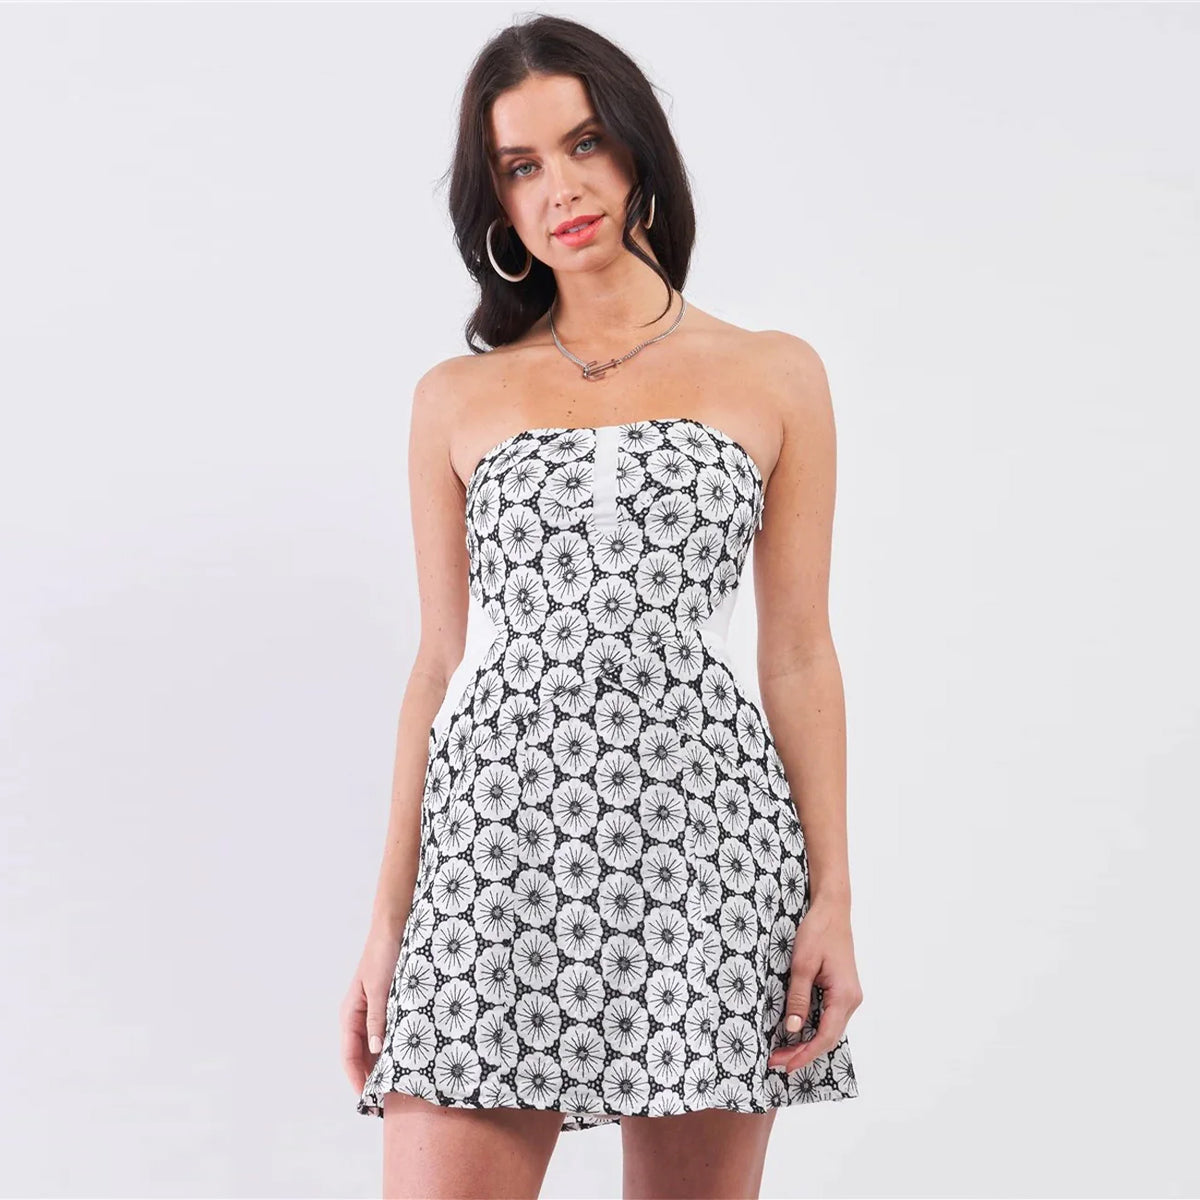 Strapless White and Black Crochet Mini Dress